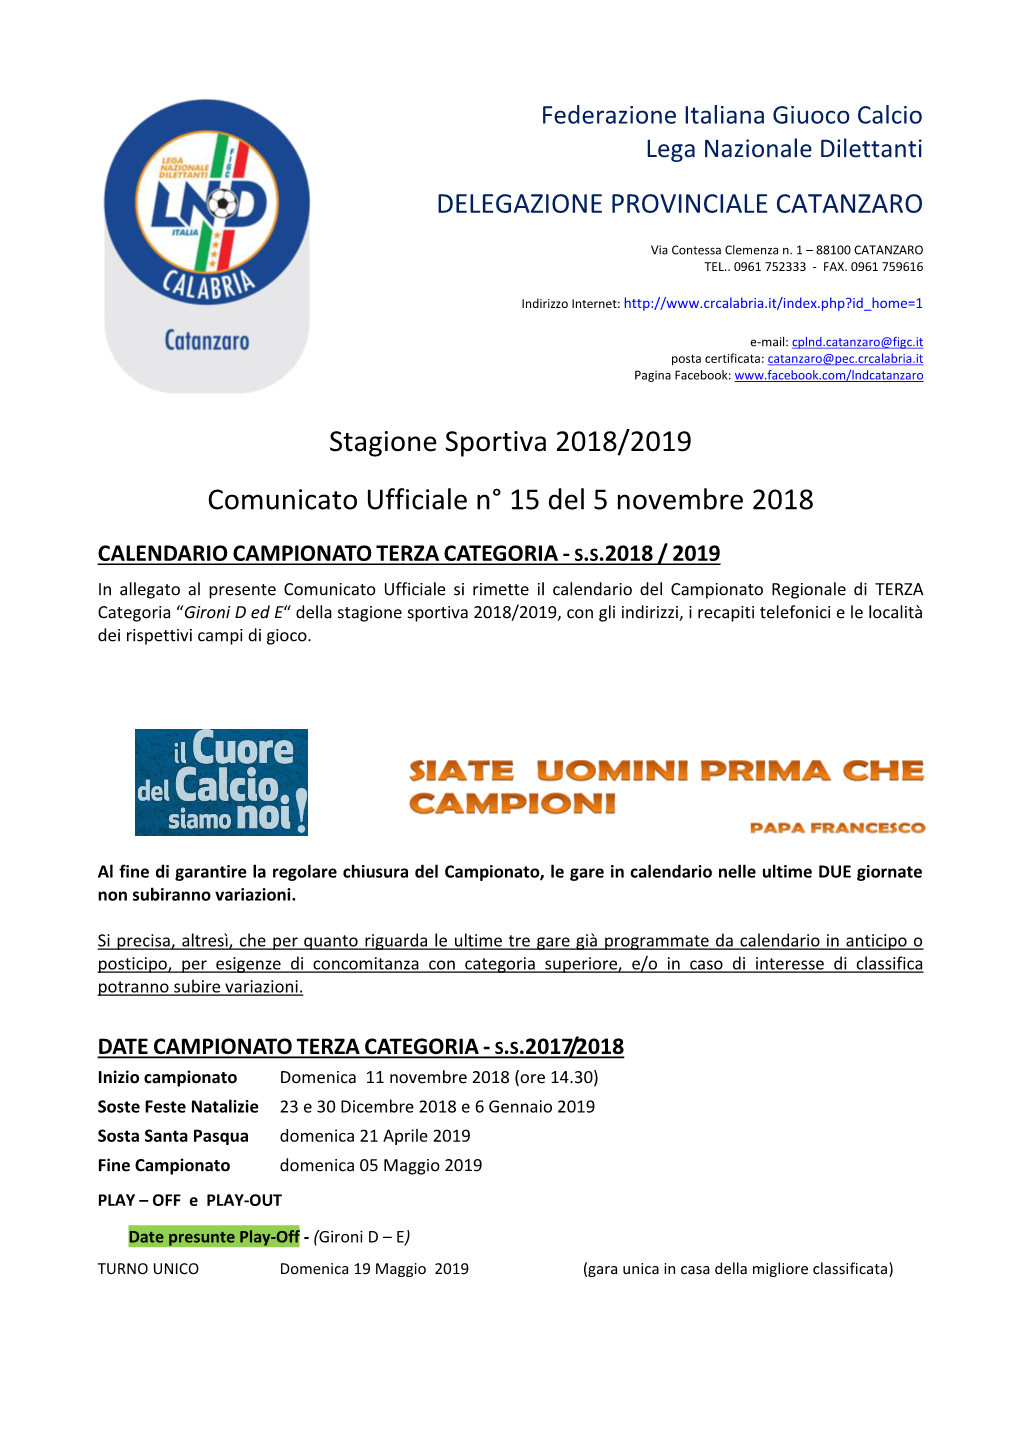 Stagione Sportiva 2018/2019 Comunicato Ufficiale N° 15 Del 5 Novembre 2018